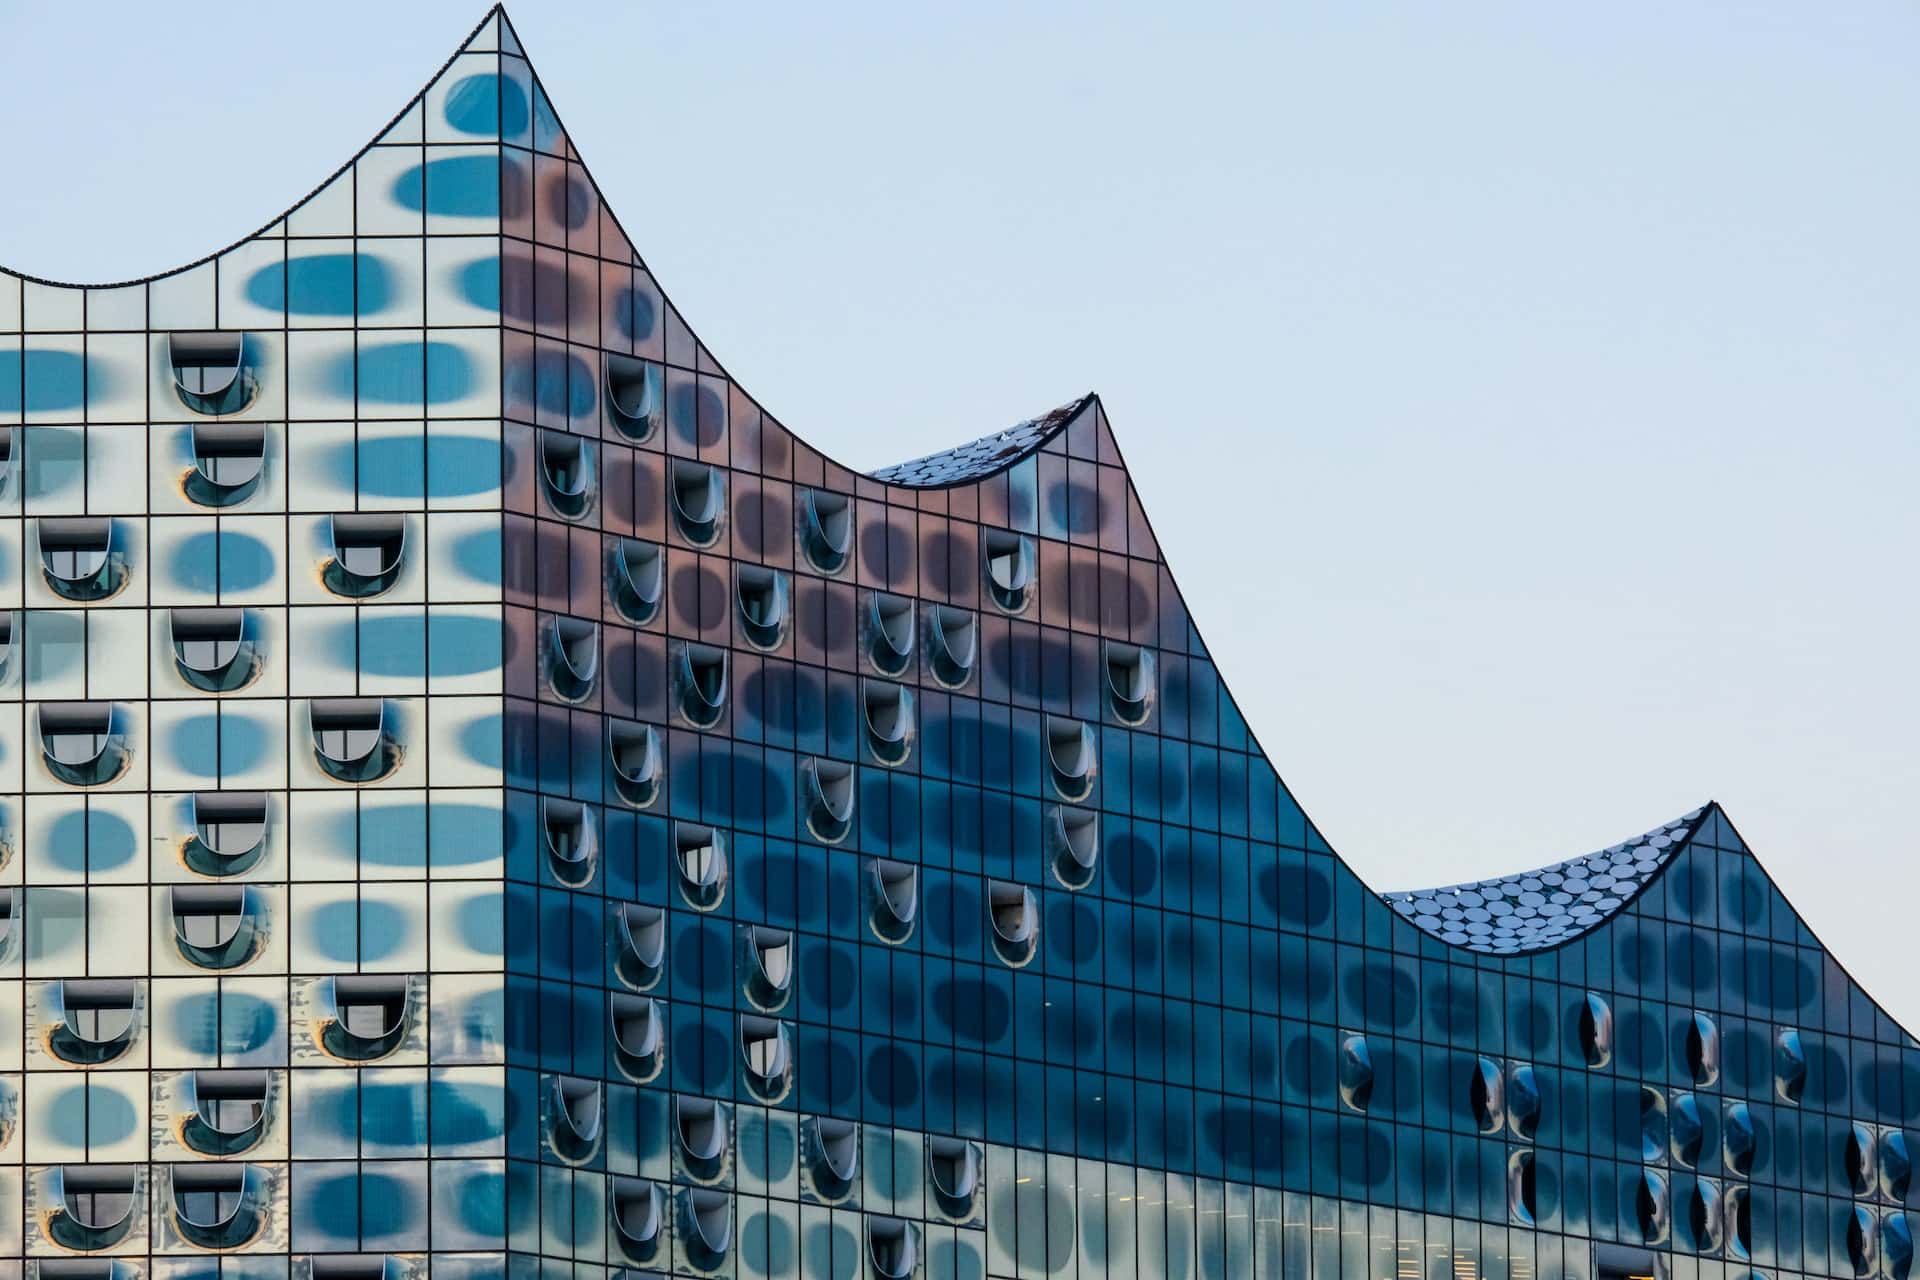 Amb l'Elbphilharmonie com a principal atracció, HafenCity és un barri revitalitzat recentment ple d'arquitectura moderna.